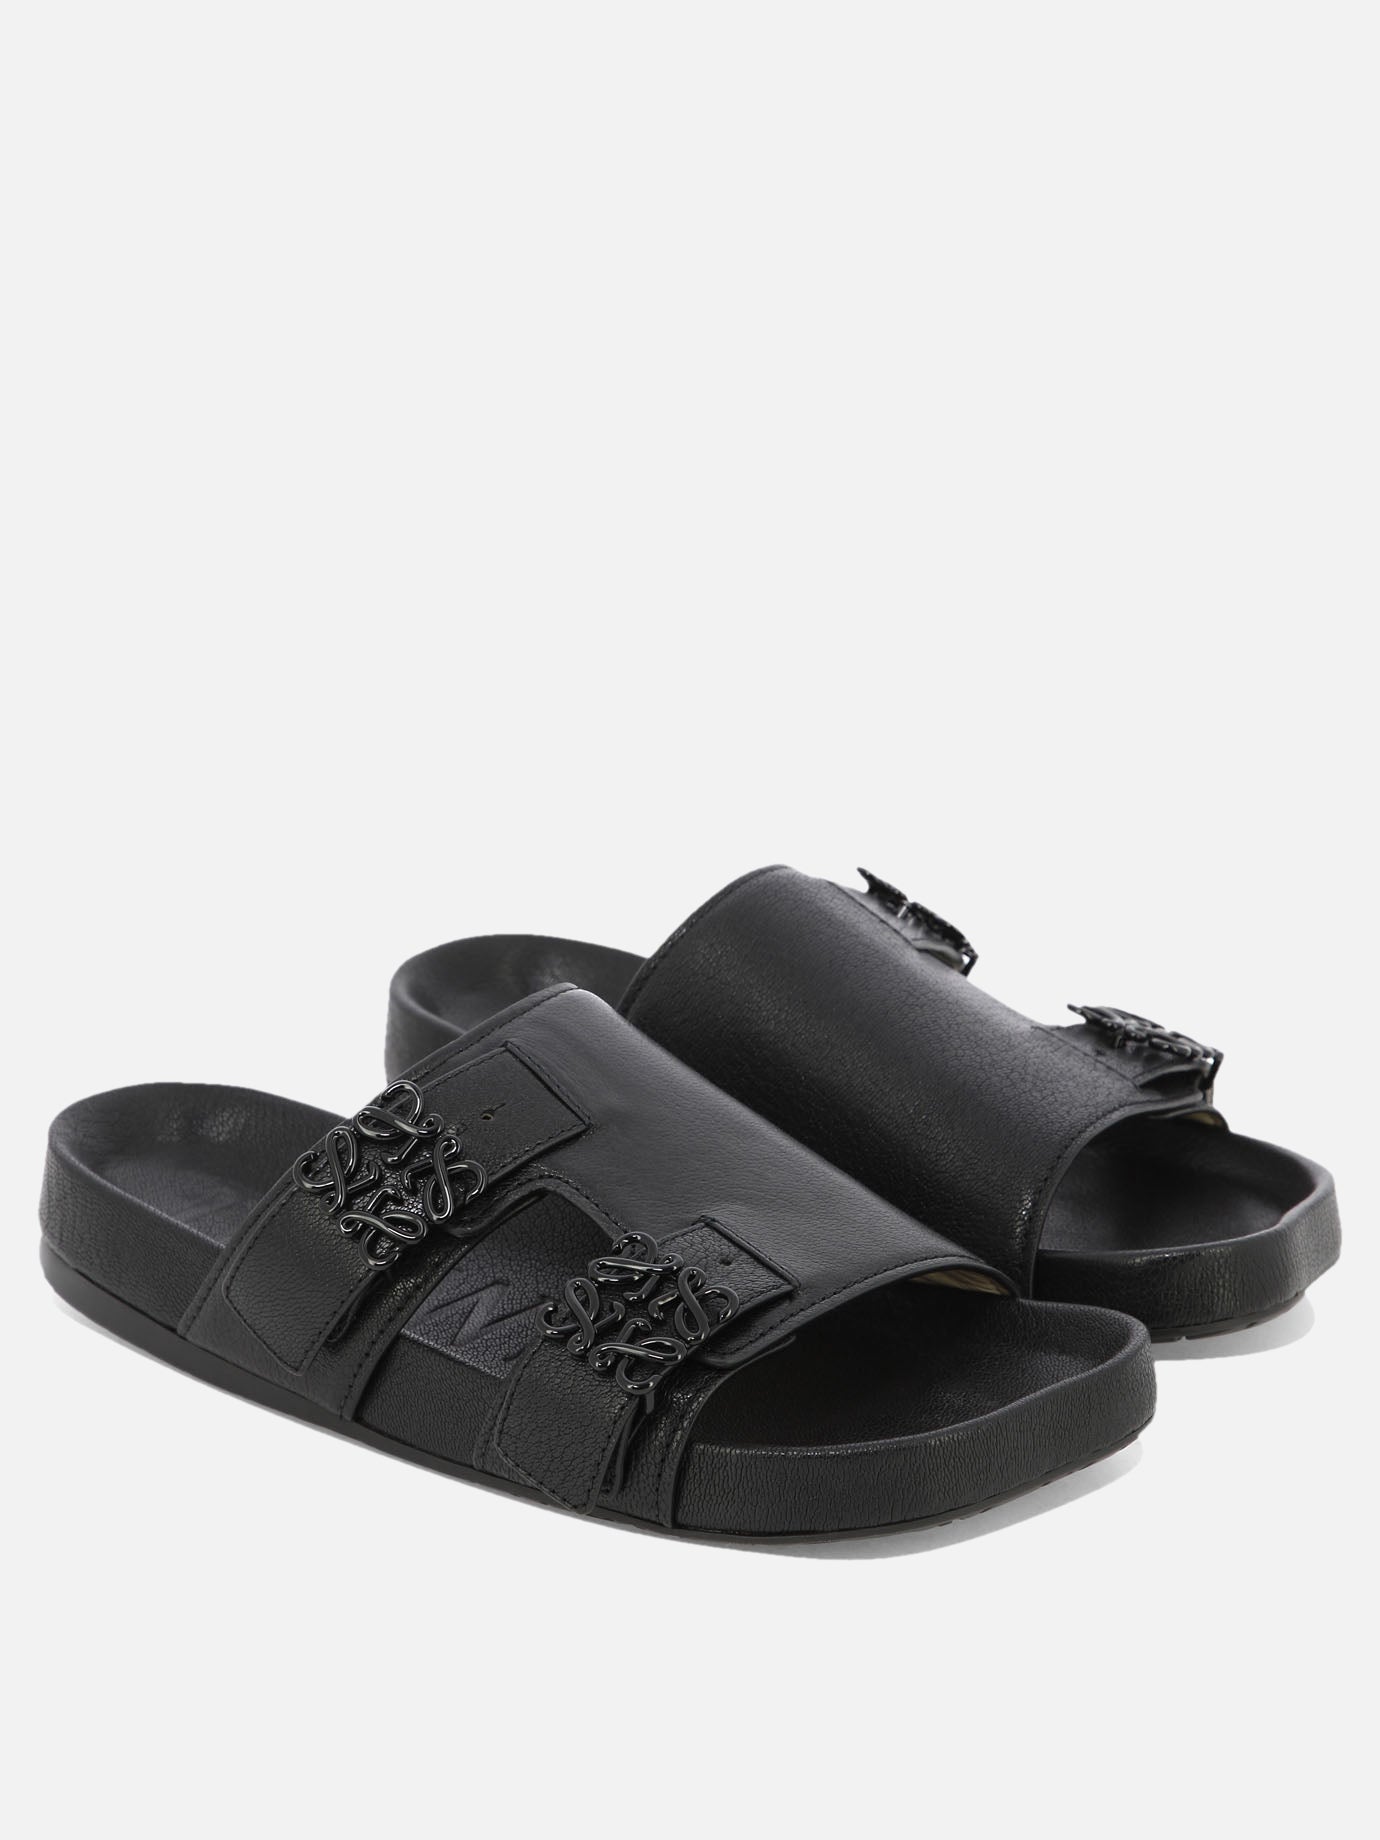 "Ease slide" sandals